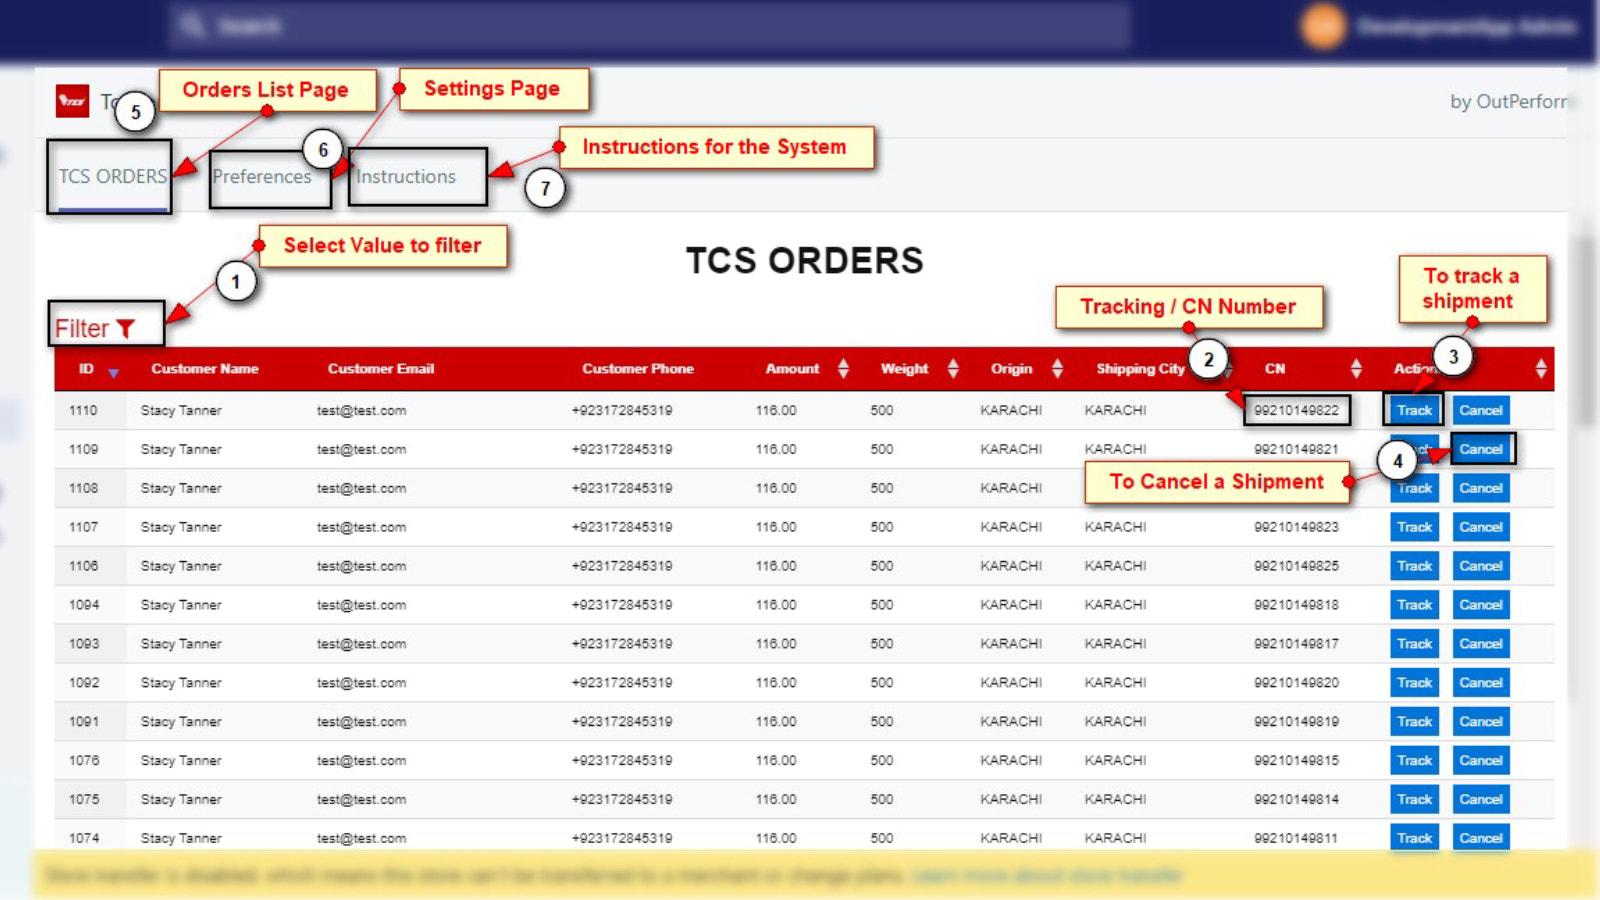 Alle skubbede ordrer sendt til TCS Customer COD Portal og sporing.